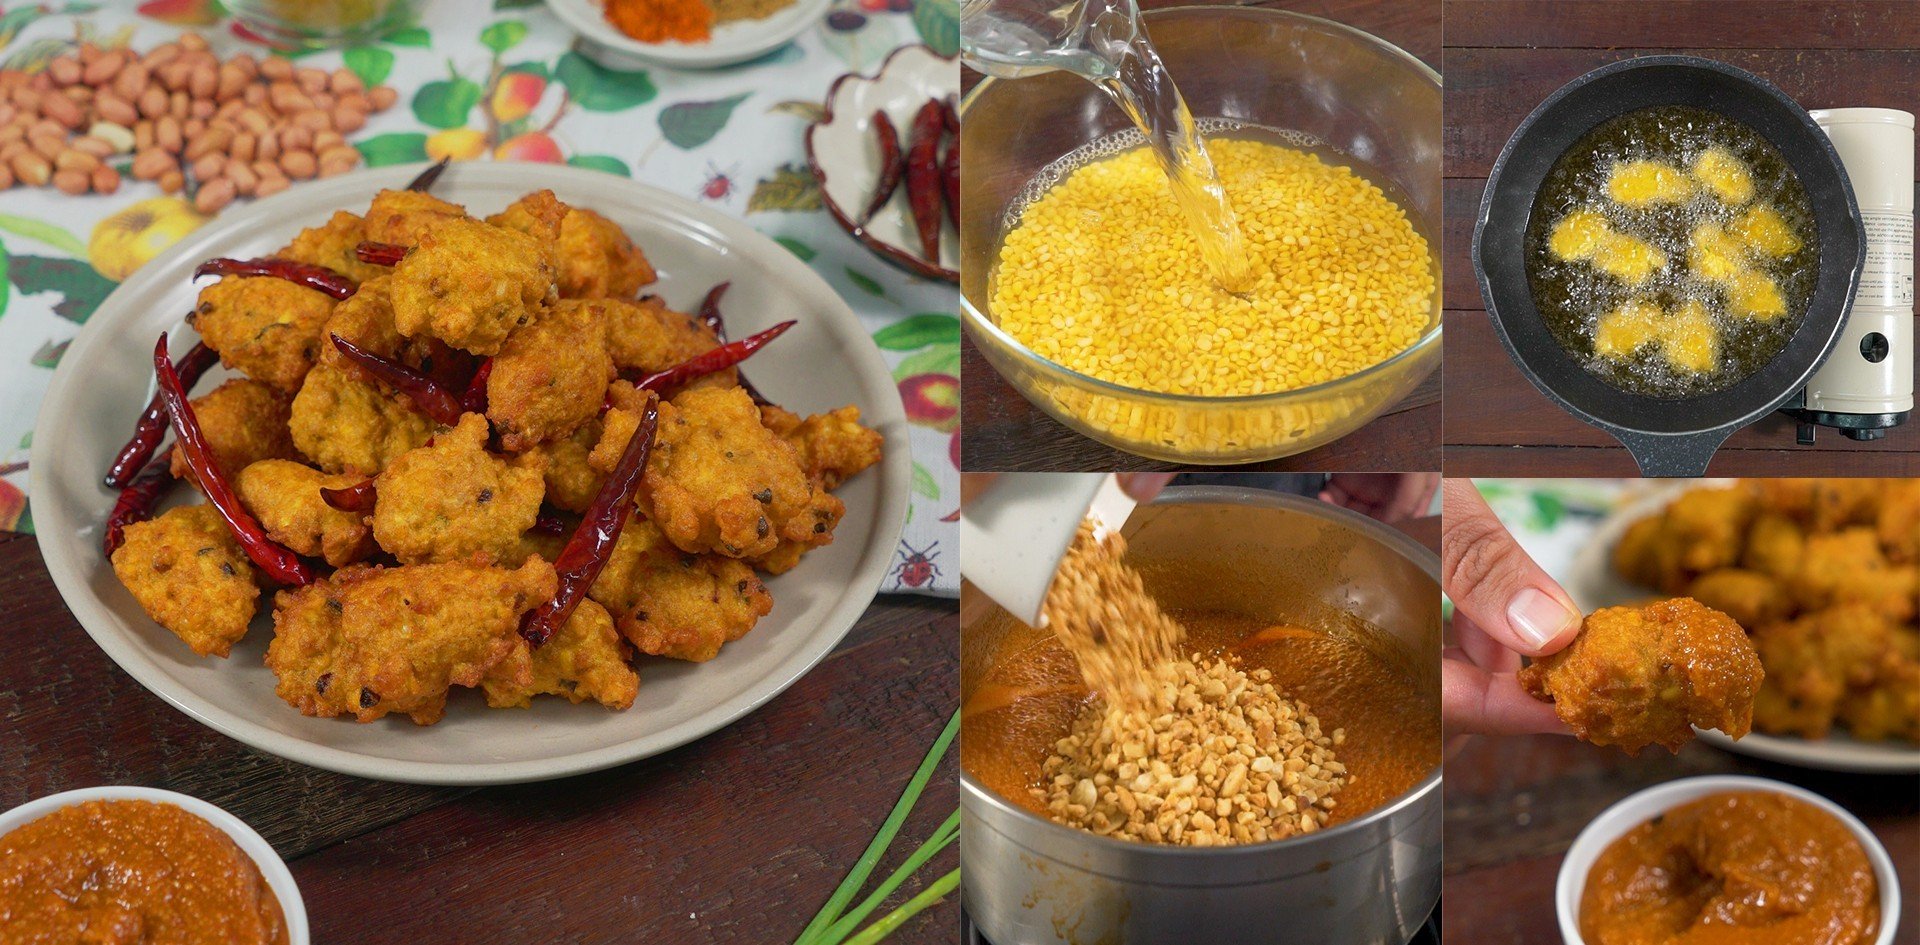 วิธีทำ “บาเยีย” เมนูอาหารว่างโบราณจากอินเดีย กินกับน้ำจิ้มสูตรเด็ด เมนูอาหารว่าง